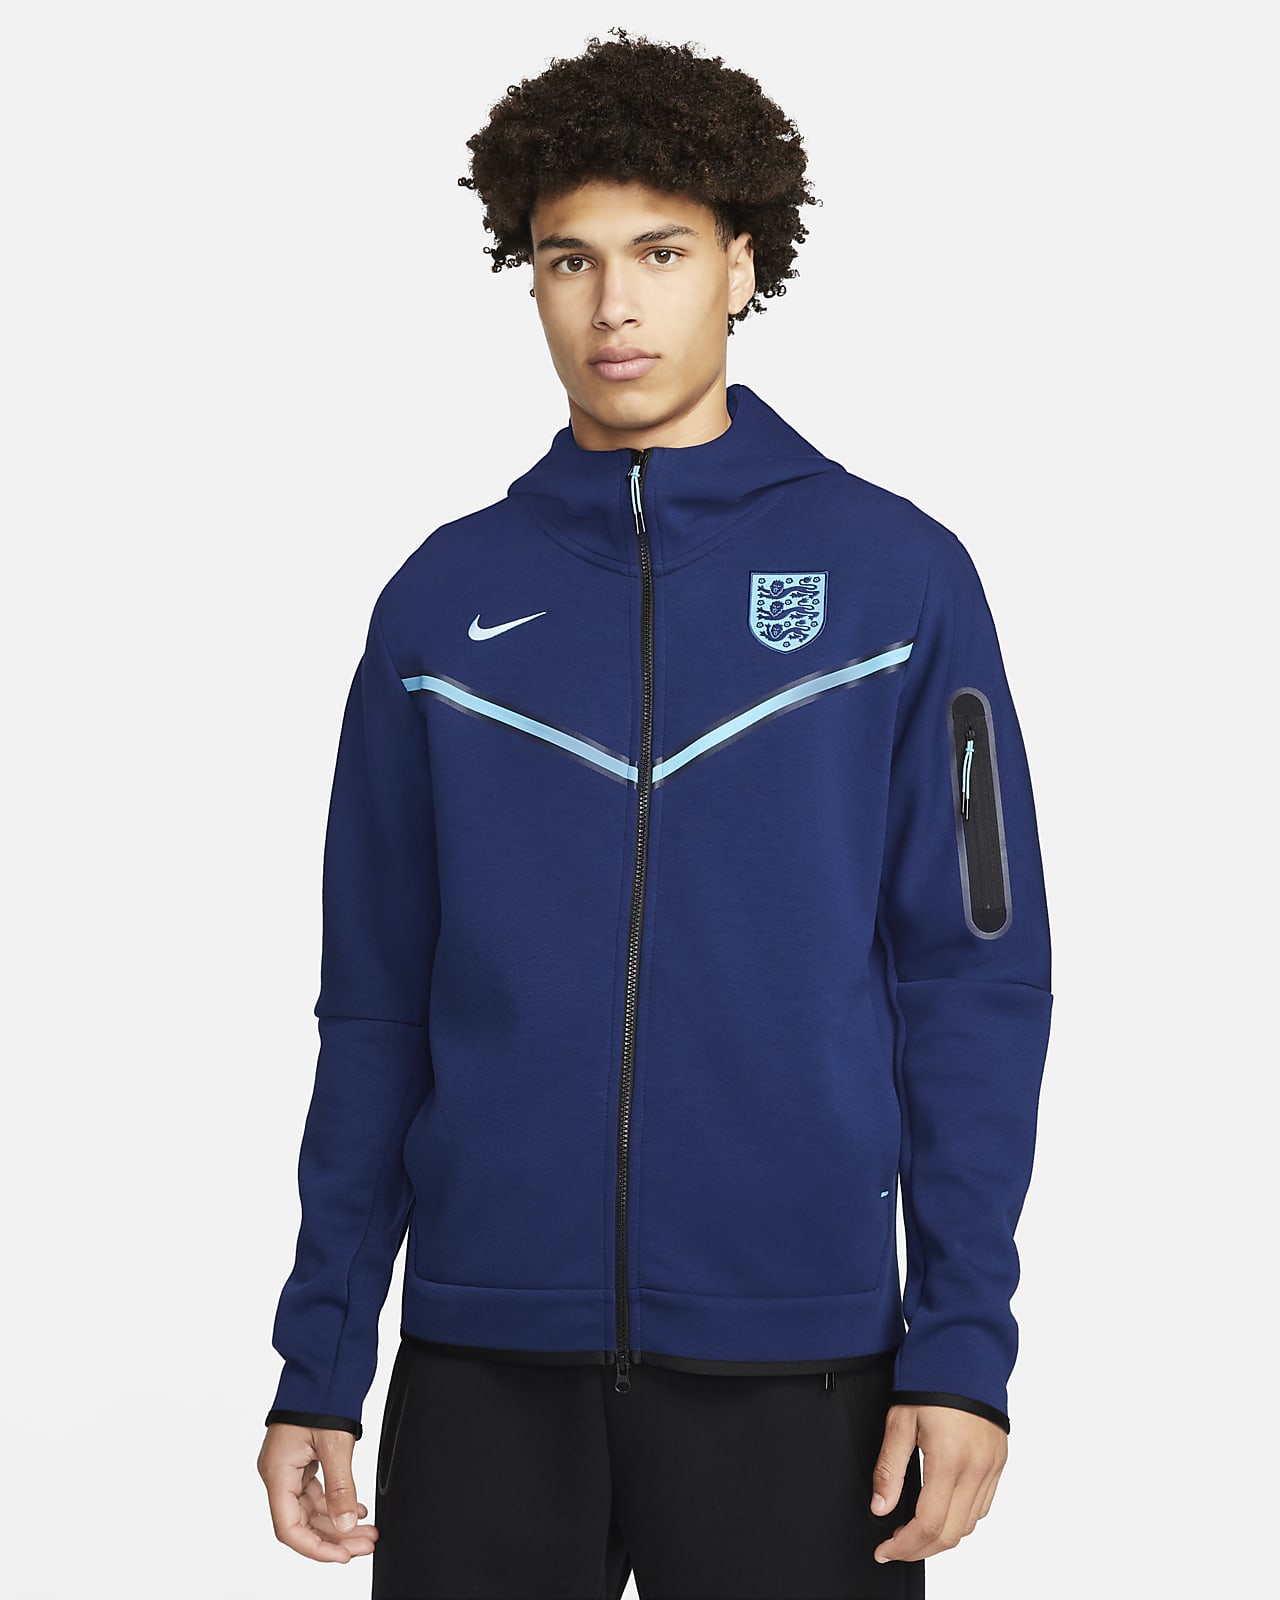 England Men's Nike Full-Zip Tech Fleece Hoodie